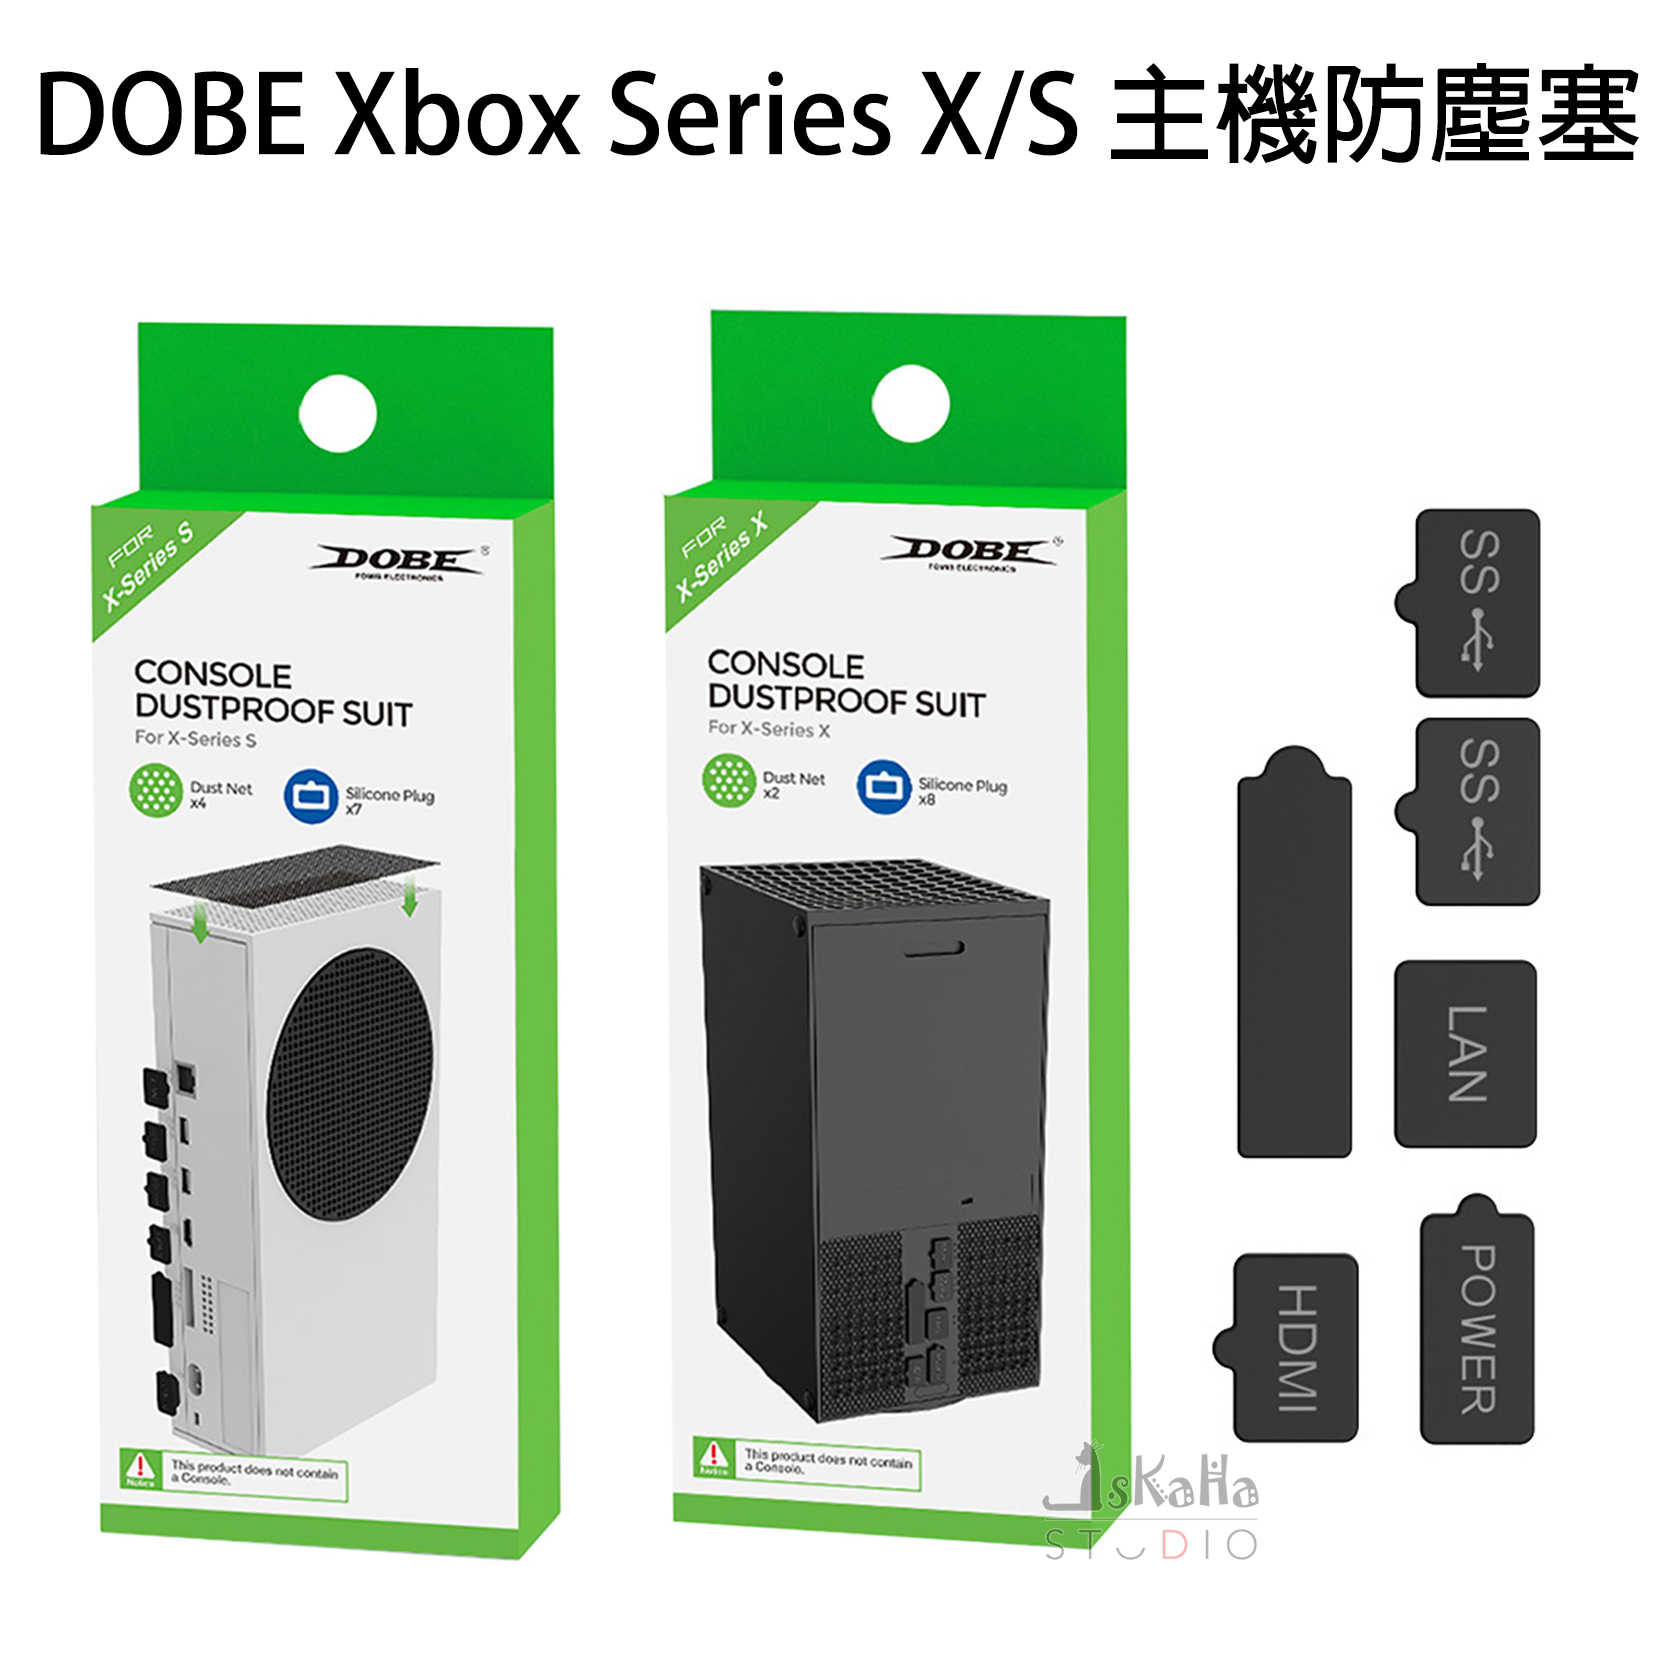 現貨 Xbox Series X/S 主機防塵塞套組 DOBE 防塵網 有效避免插口生鏽氧化 防塵套組 保護主機不入塵